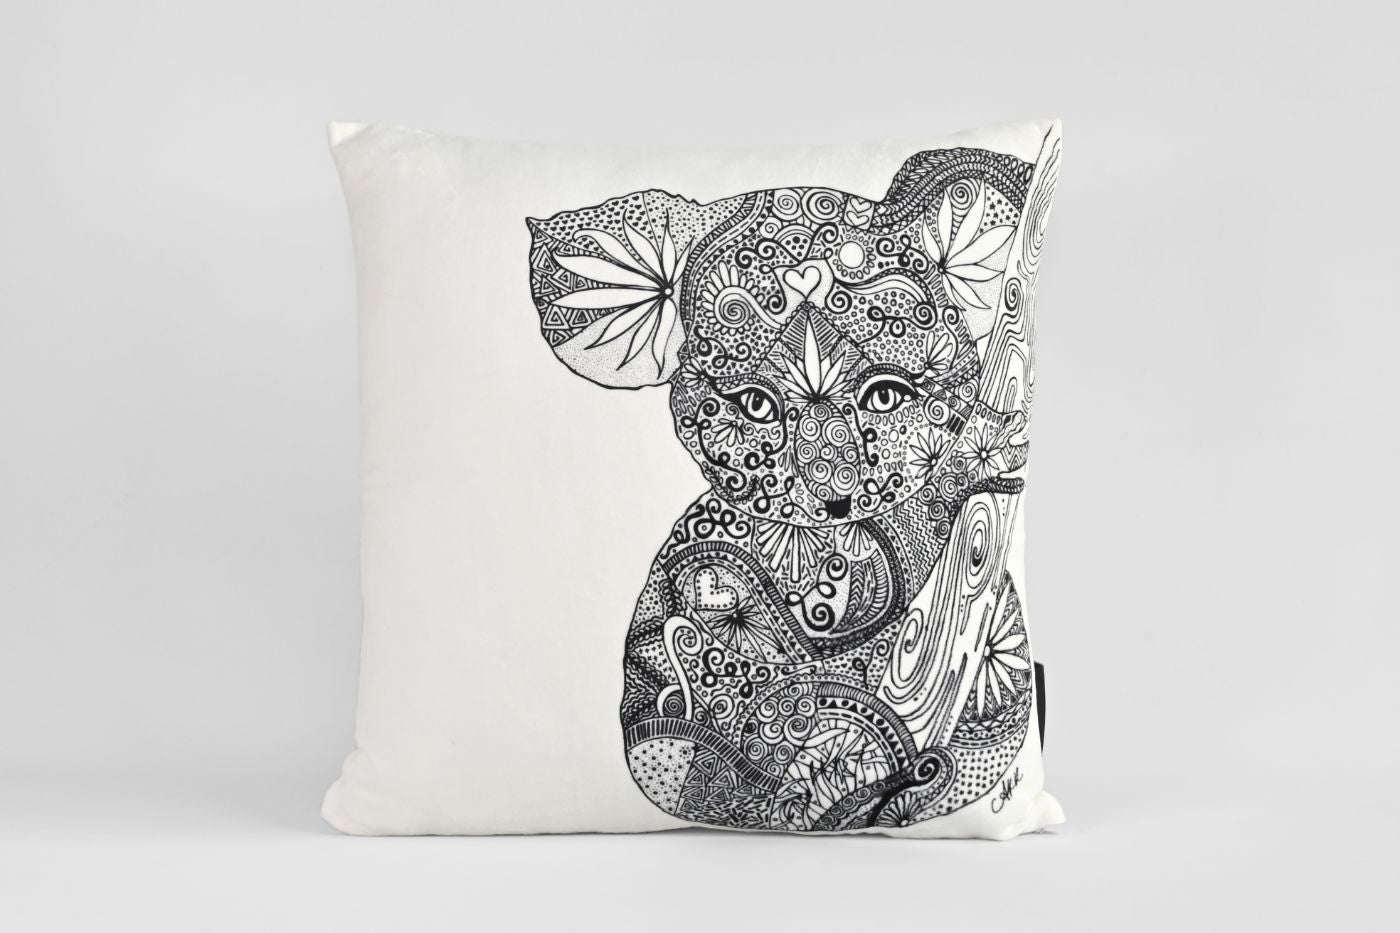 Kimberly the Koala Velvet Cushion - Black and White